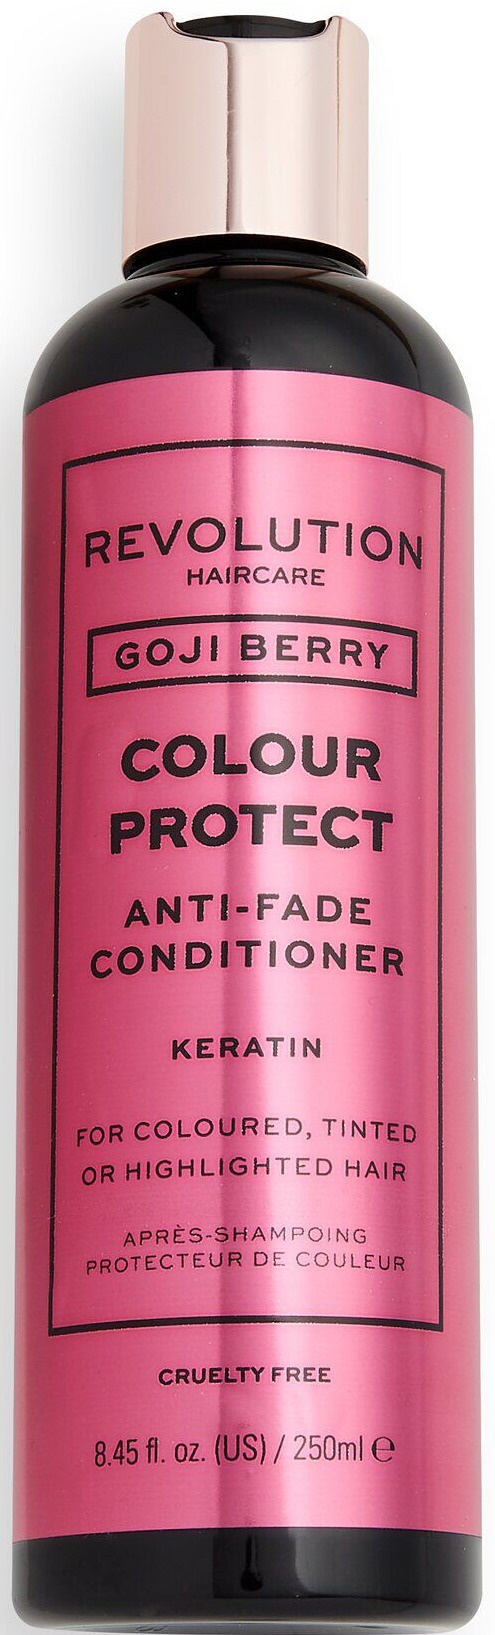 Revolution Haircare Goji Berry Colour Protect Anti-Fade Conditioner